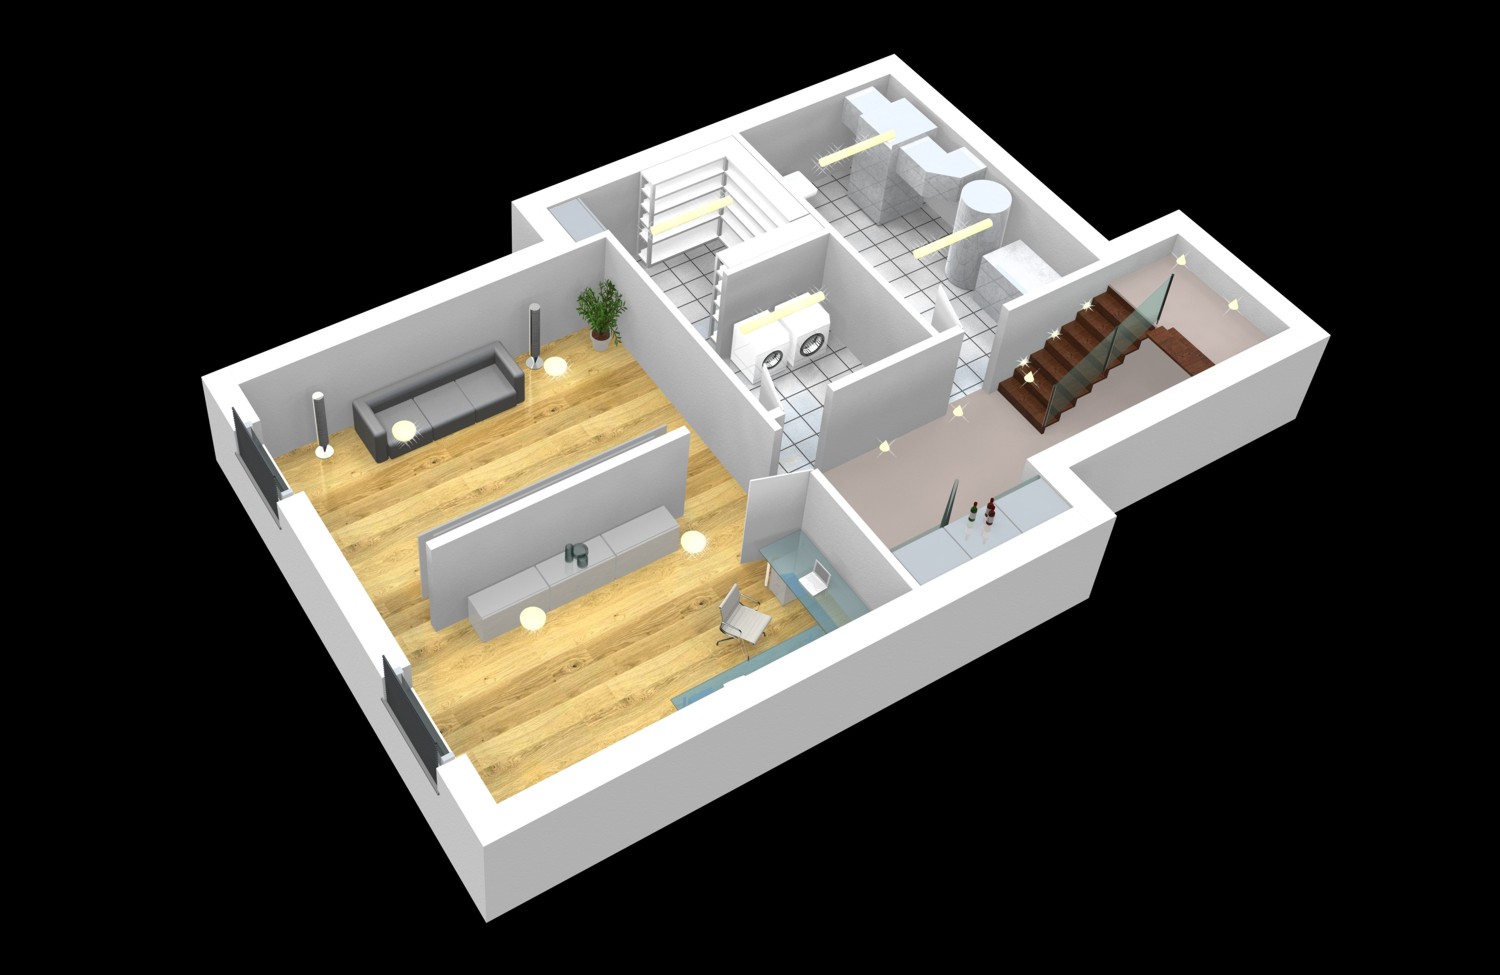 Architekturvisualisierung perspektivische Darstellung in 3D einer Gebäude-Ebene / eines Grundrisses